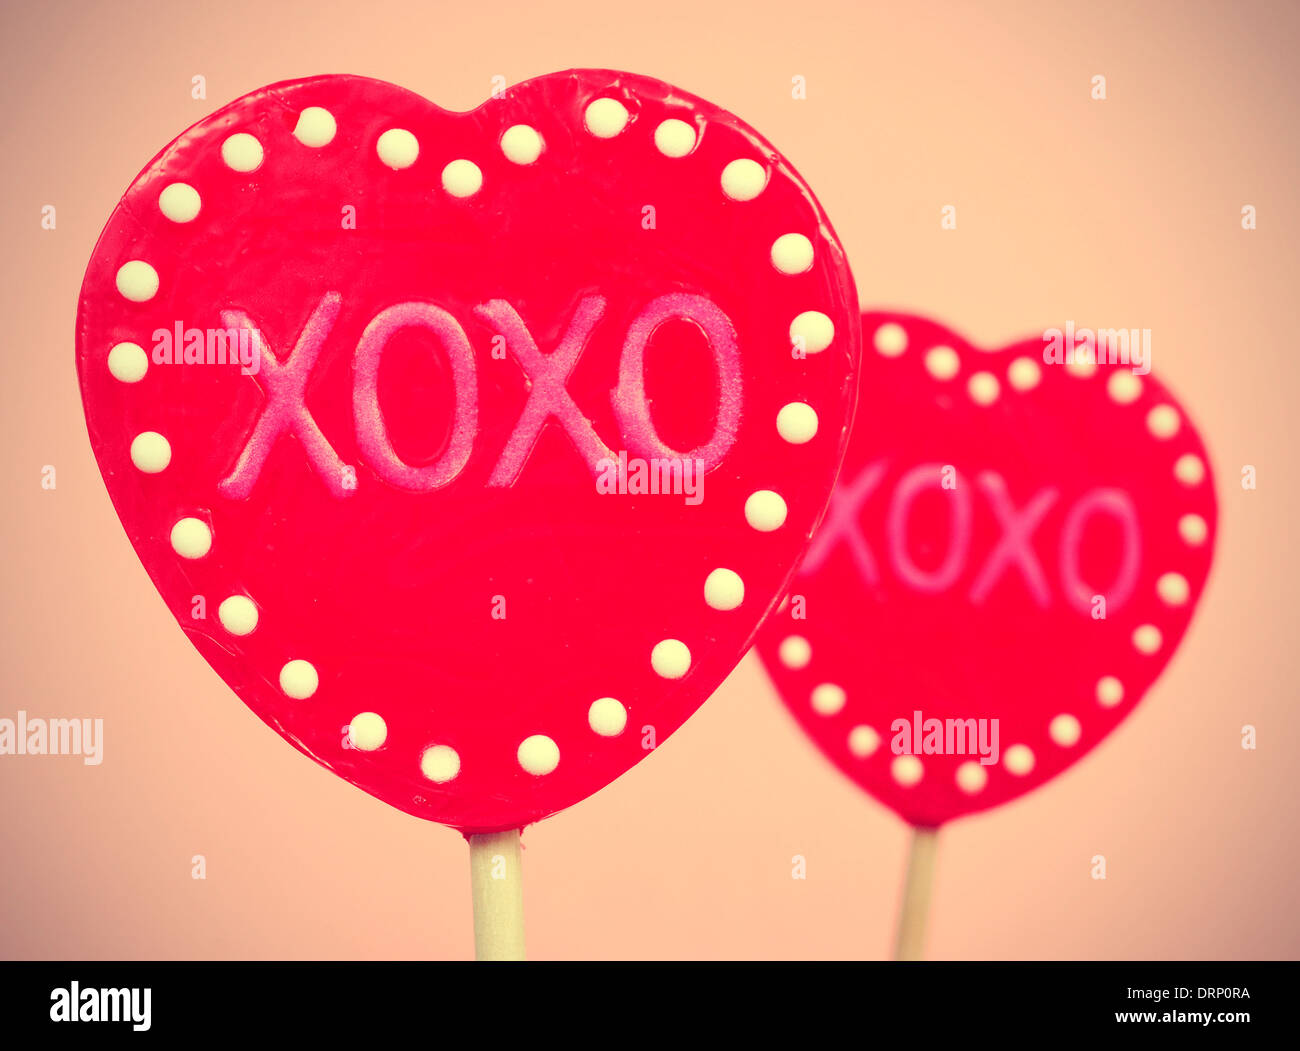 Foto di alcuni a forma di cuore lecca lecca con il testo XOXO, baci e abbracci, scritto in essi, con un effetto retrò Foto Stock